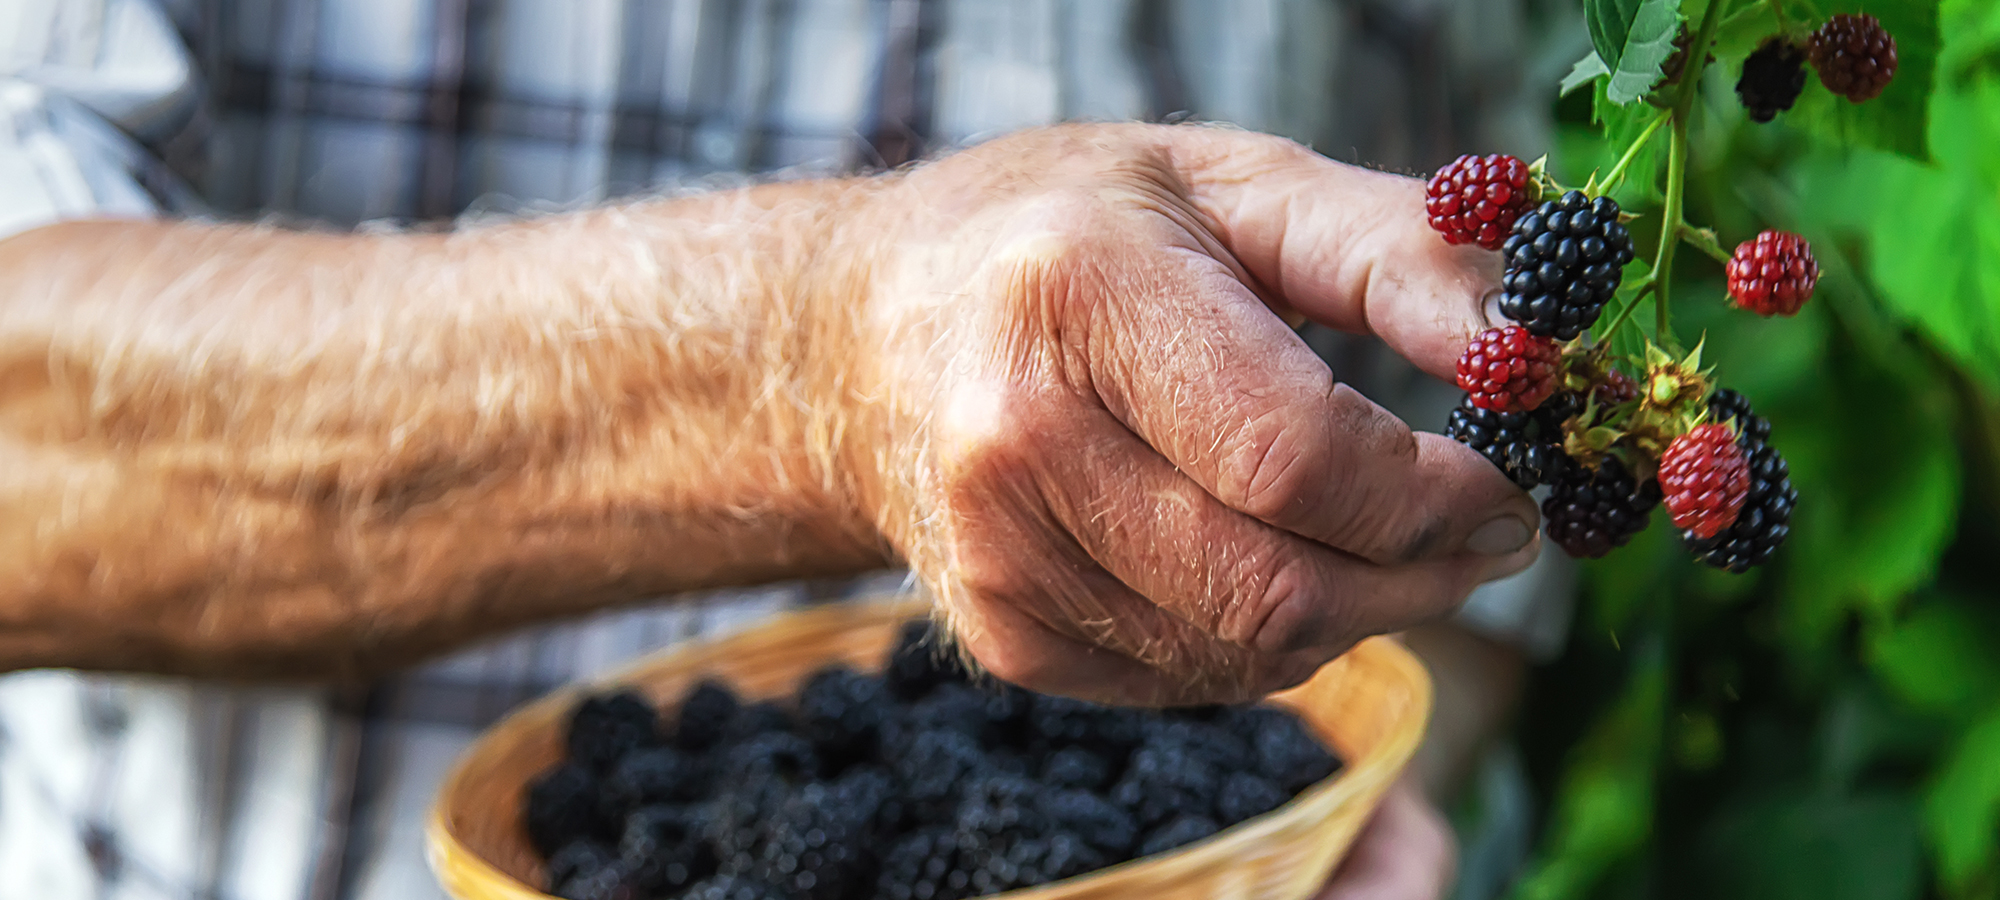 Blackberries farmer